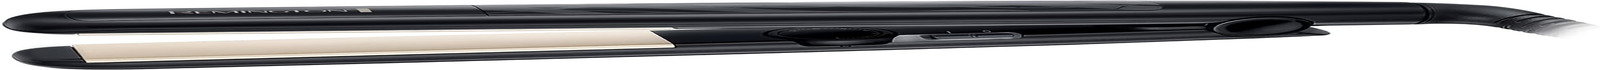 Remington Ceramic Hair Straightener - Slim Longer Length 110Mm Floating Plates w